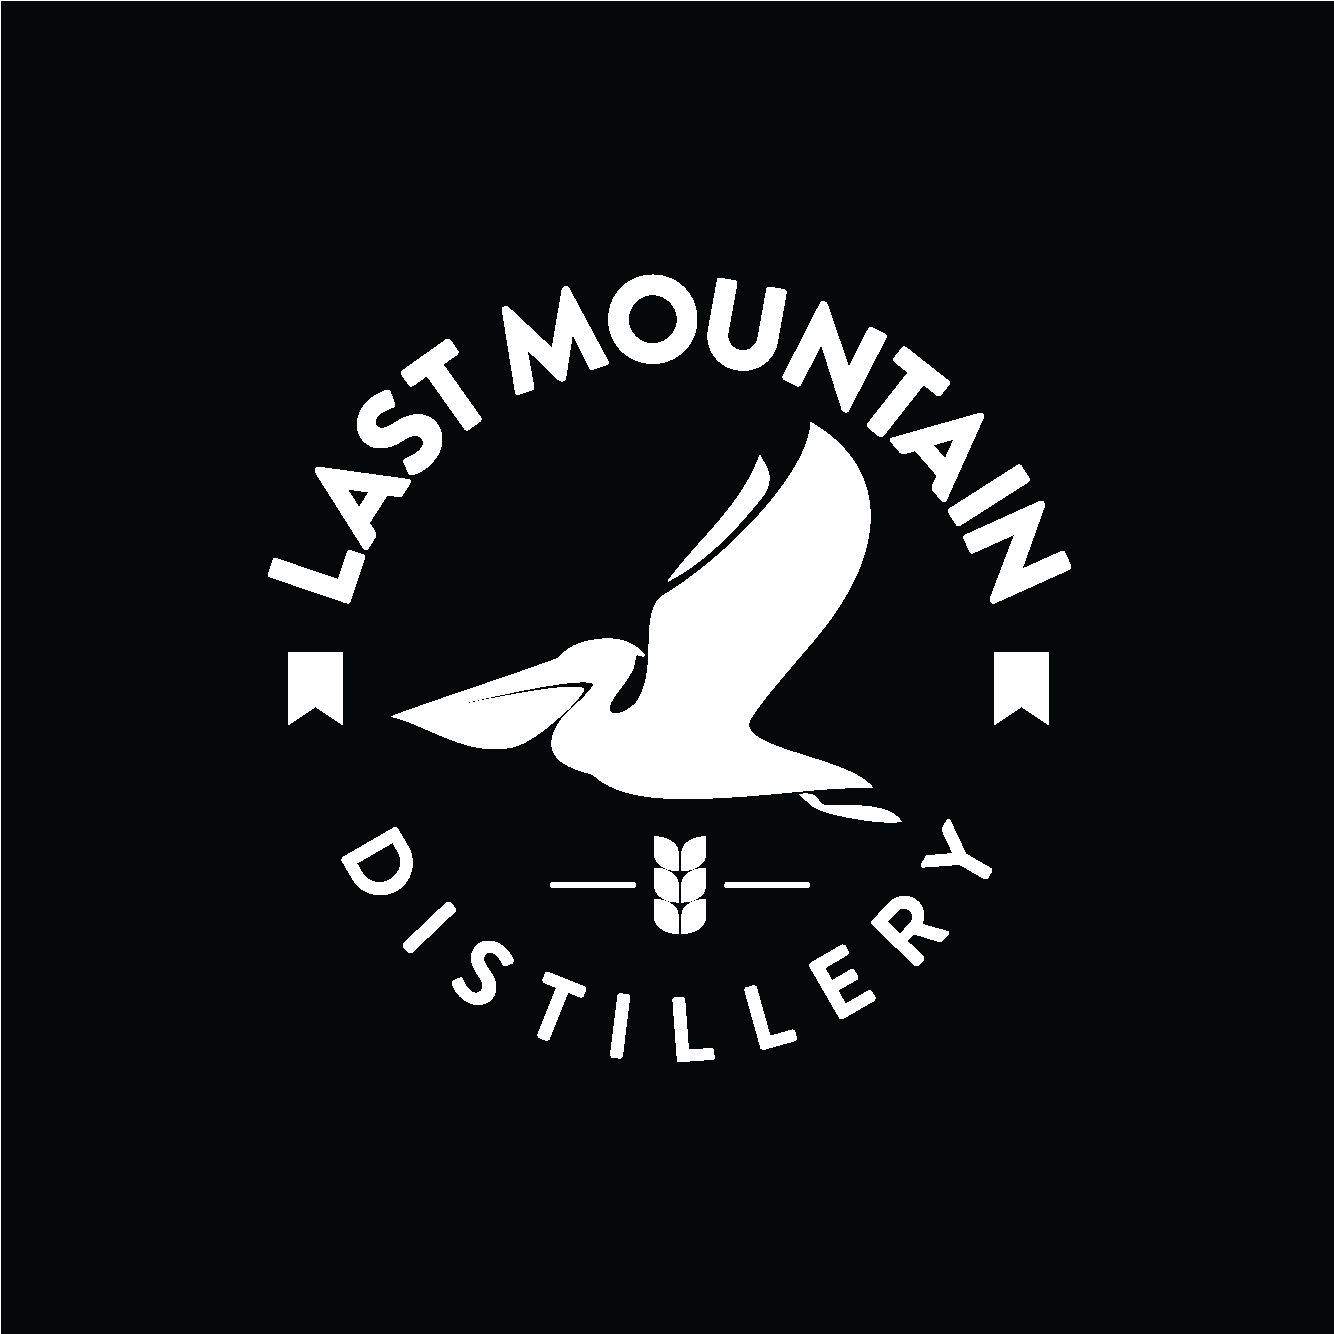 Last Mountain Distillery